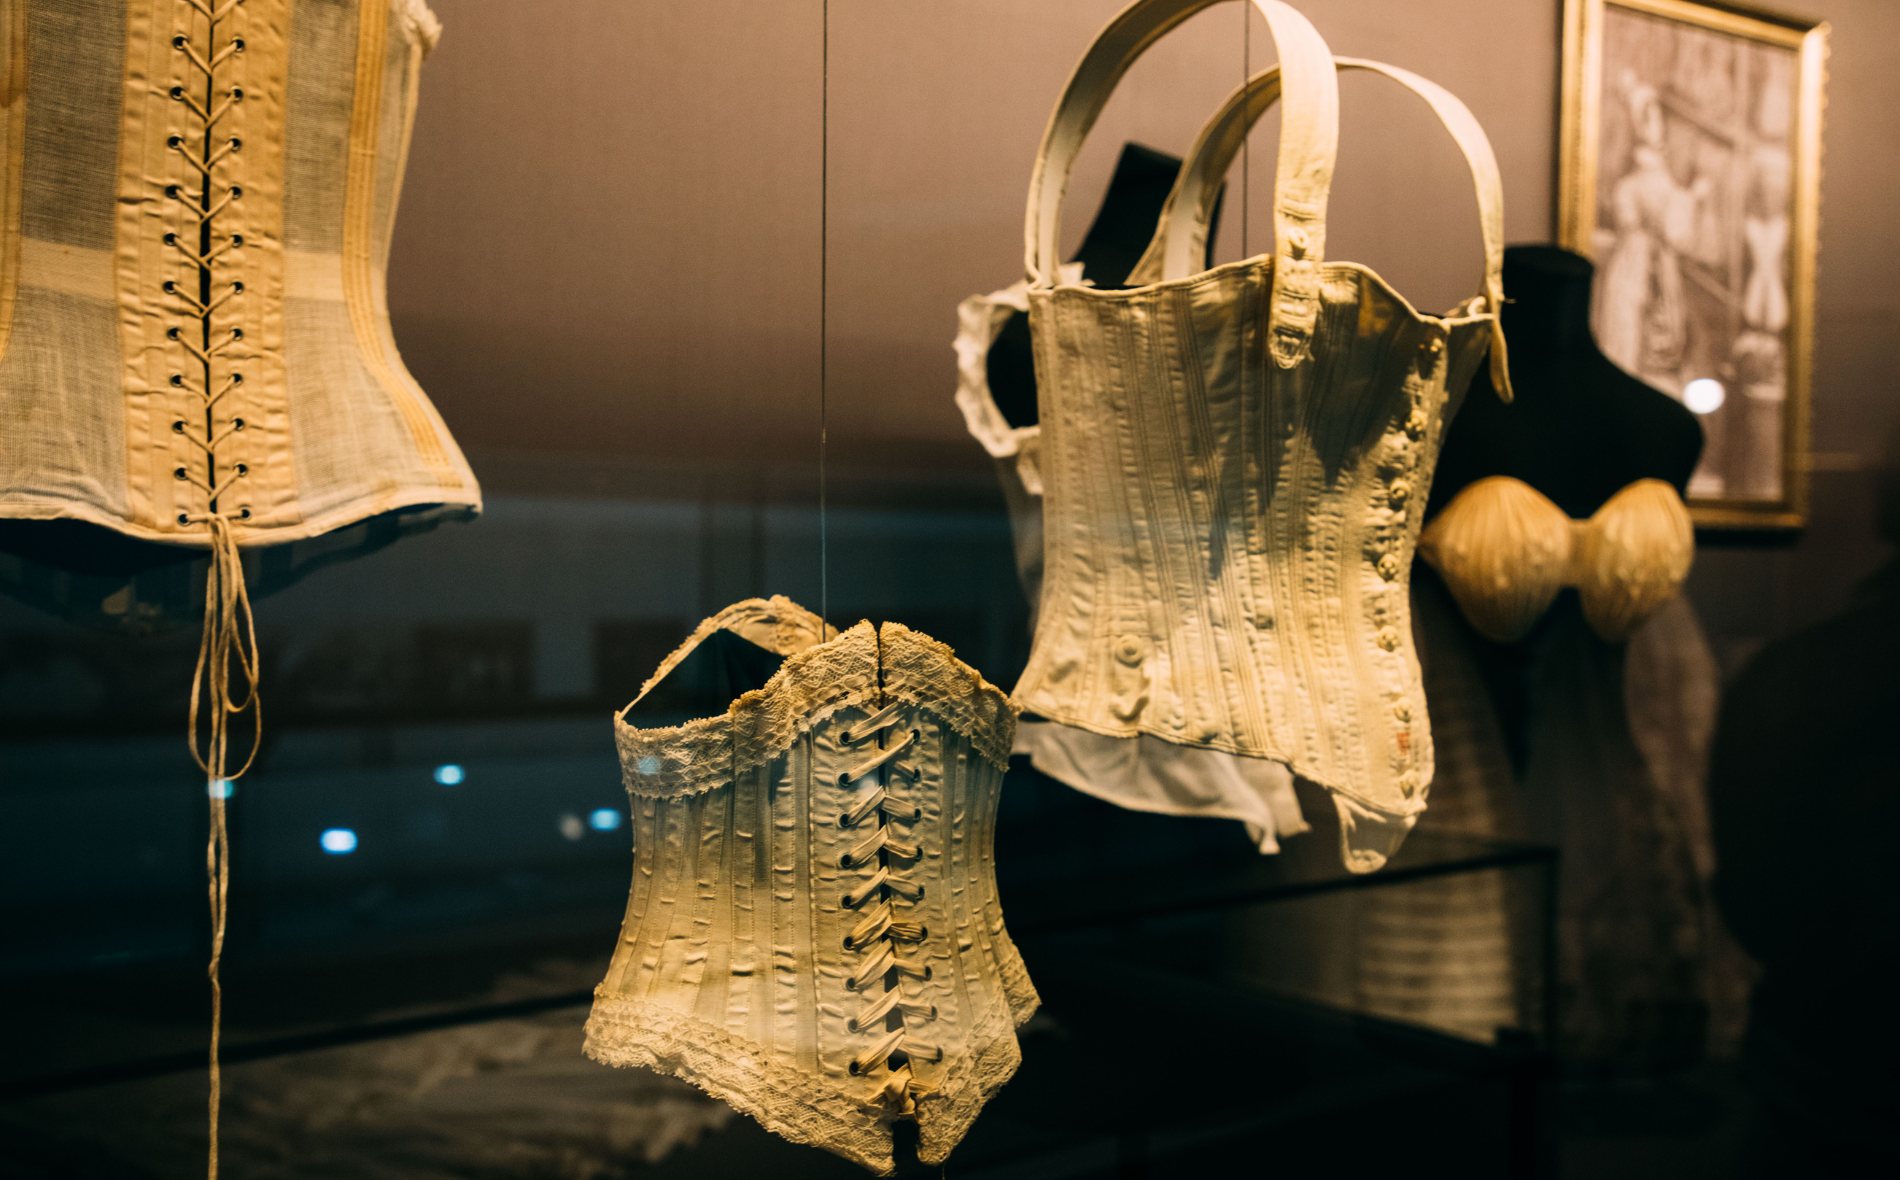 Une exposition de corsets historiques de la cour d'Espagne du XVIème